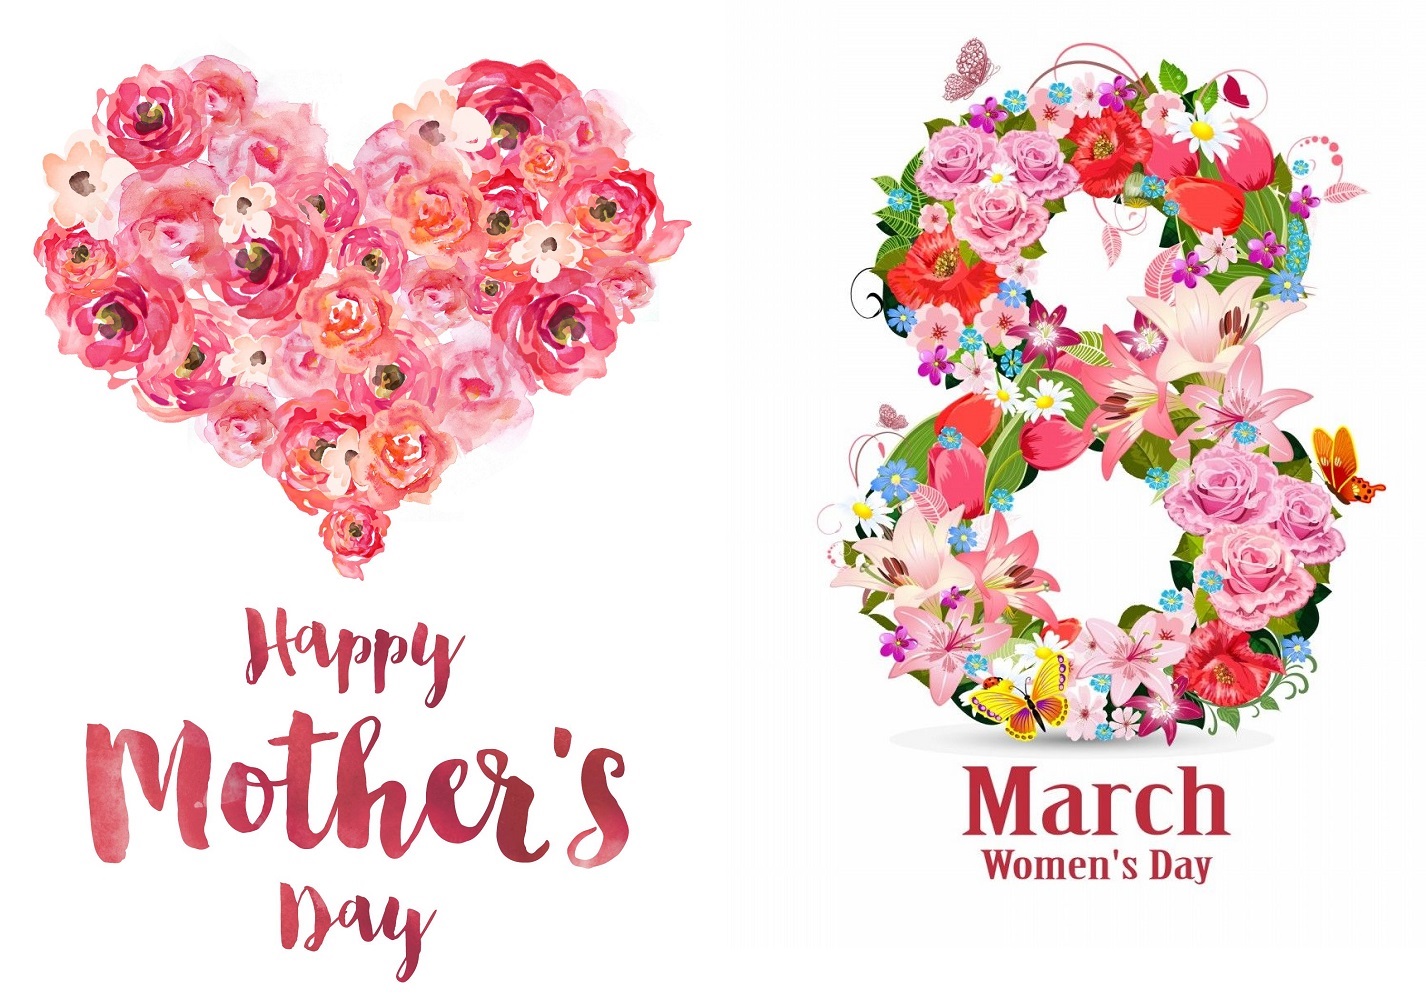 3 марта - День матери и 8 марта - Международный женский день - праздники!